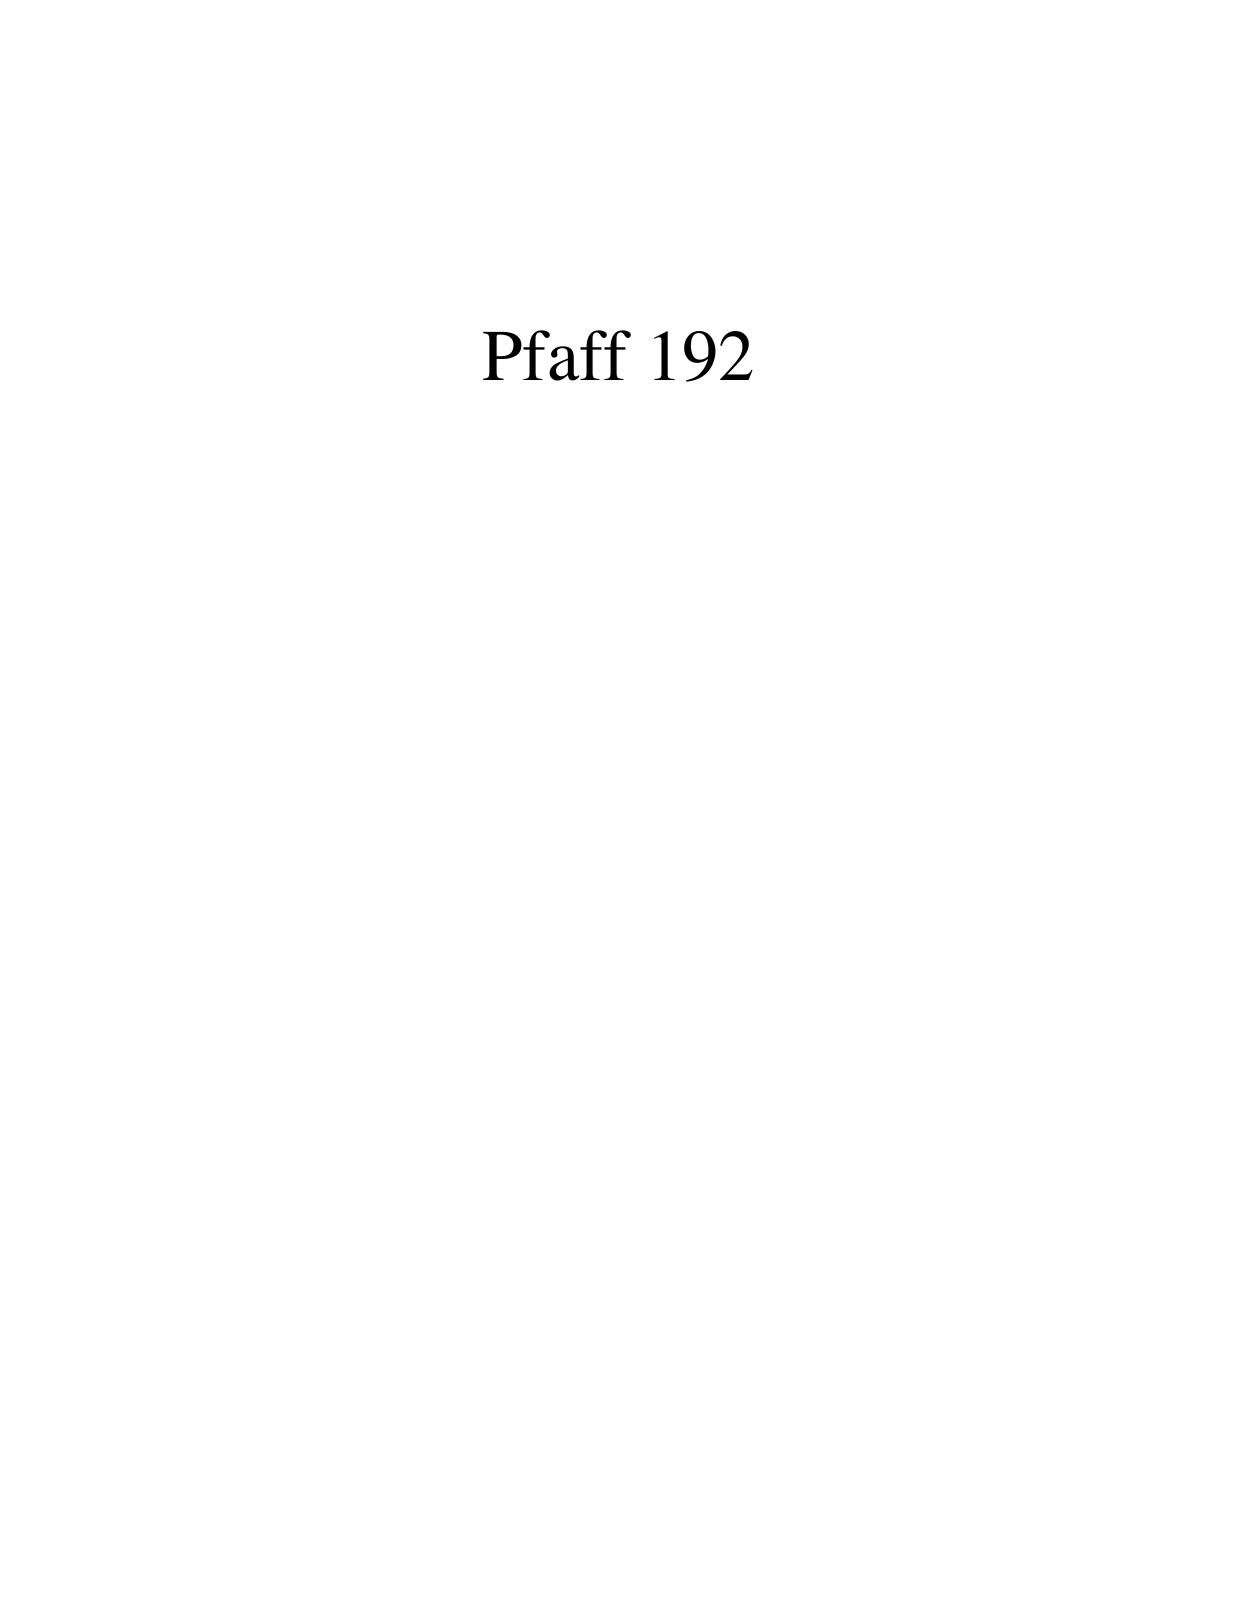 PFAFF 192 Parts List